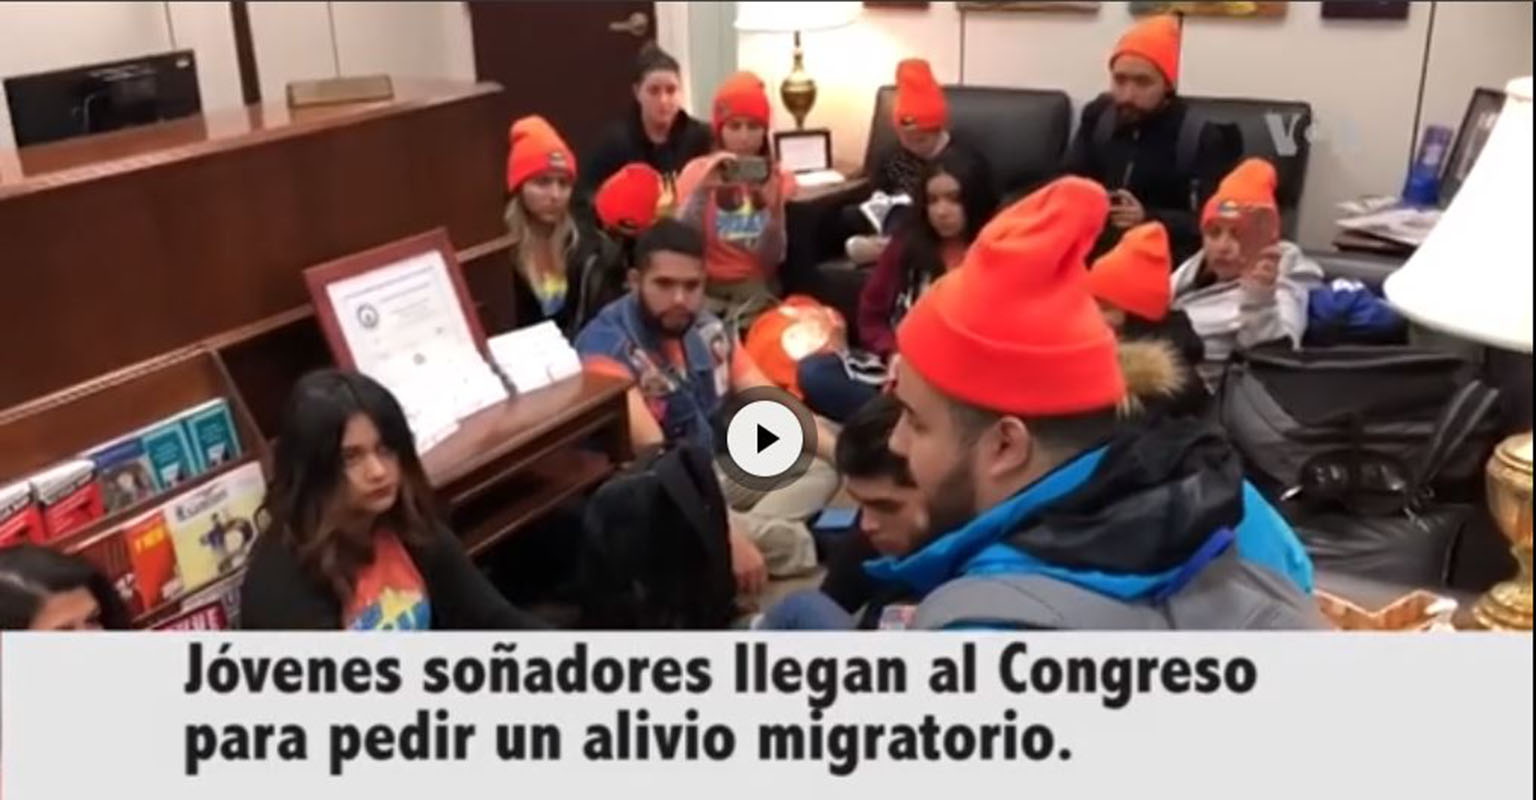 VIDEO: Jóvenes soñadores llegan al Congreso y exigen sus derechos